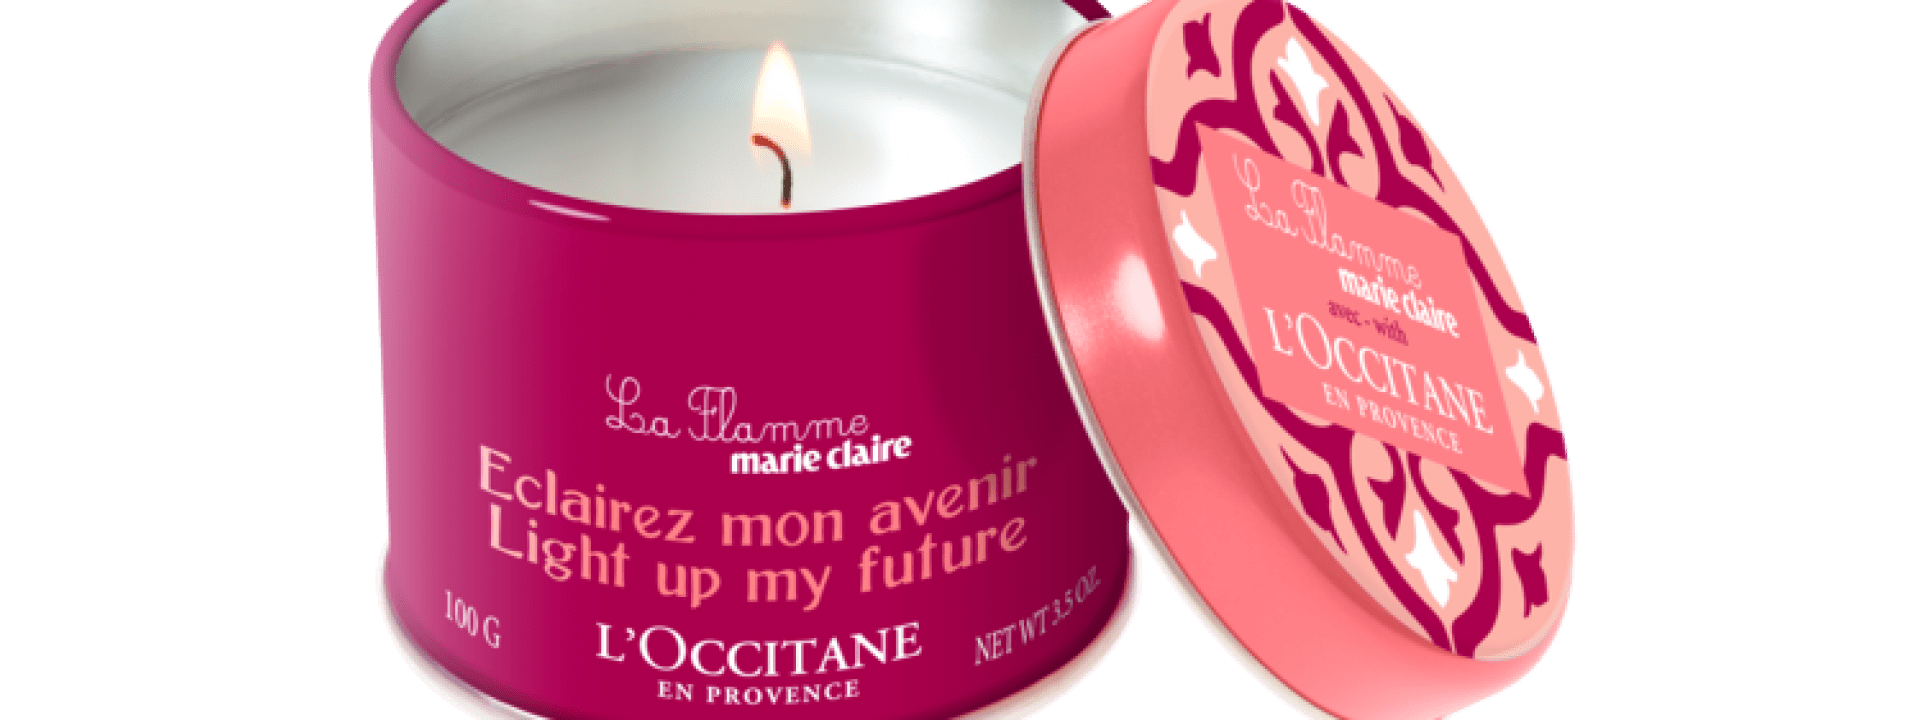 Apoie o empreendedorismo com a L’occitane